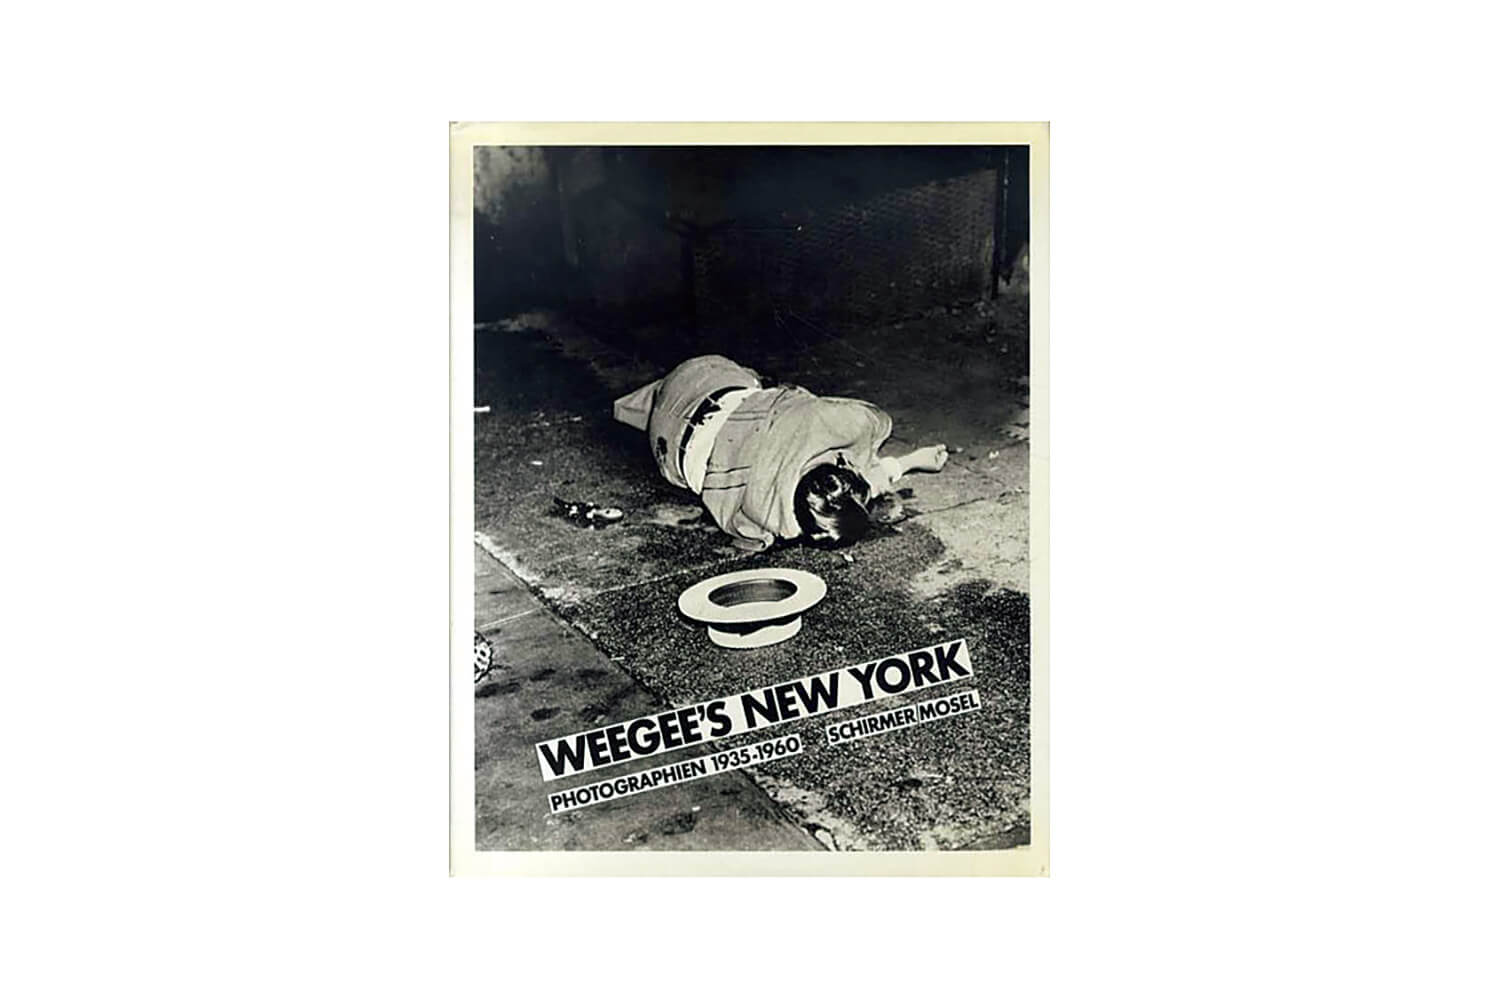 ウィージー 写真集『WEEGEE’S NEW YORKPHOTOGRAPHIEN 1935-1960』表紙